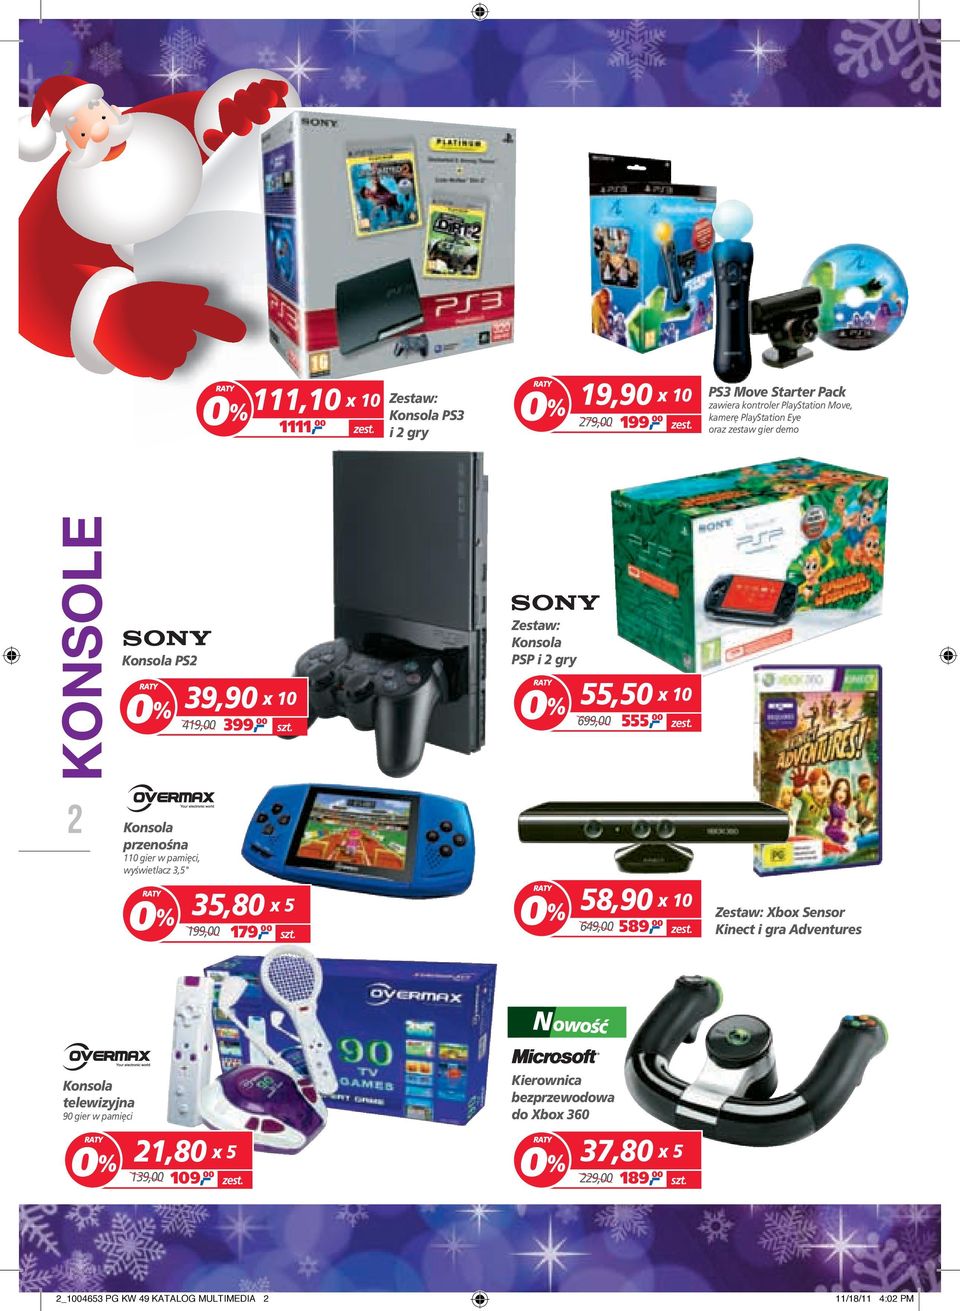 gier w pamięci, wyświetlacz 3,5" 35,80 x 5 199,00 179, 00 58,90 x 10 589, 00 649,00 Zestaw: Xbox Sensor Kinect i gra Adventures Konsola telewizyjna 90